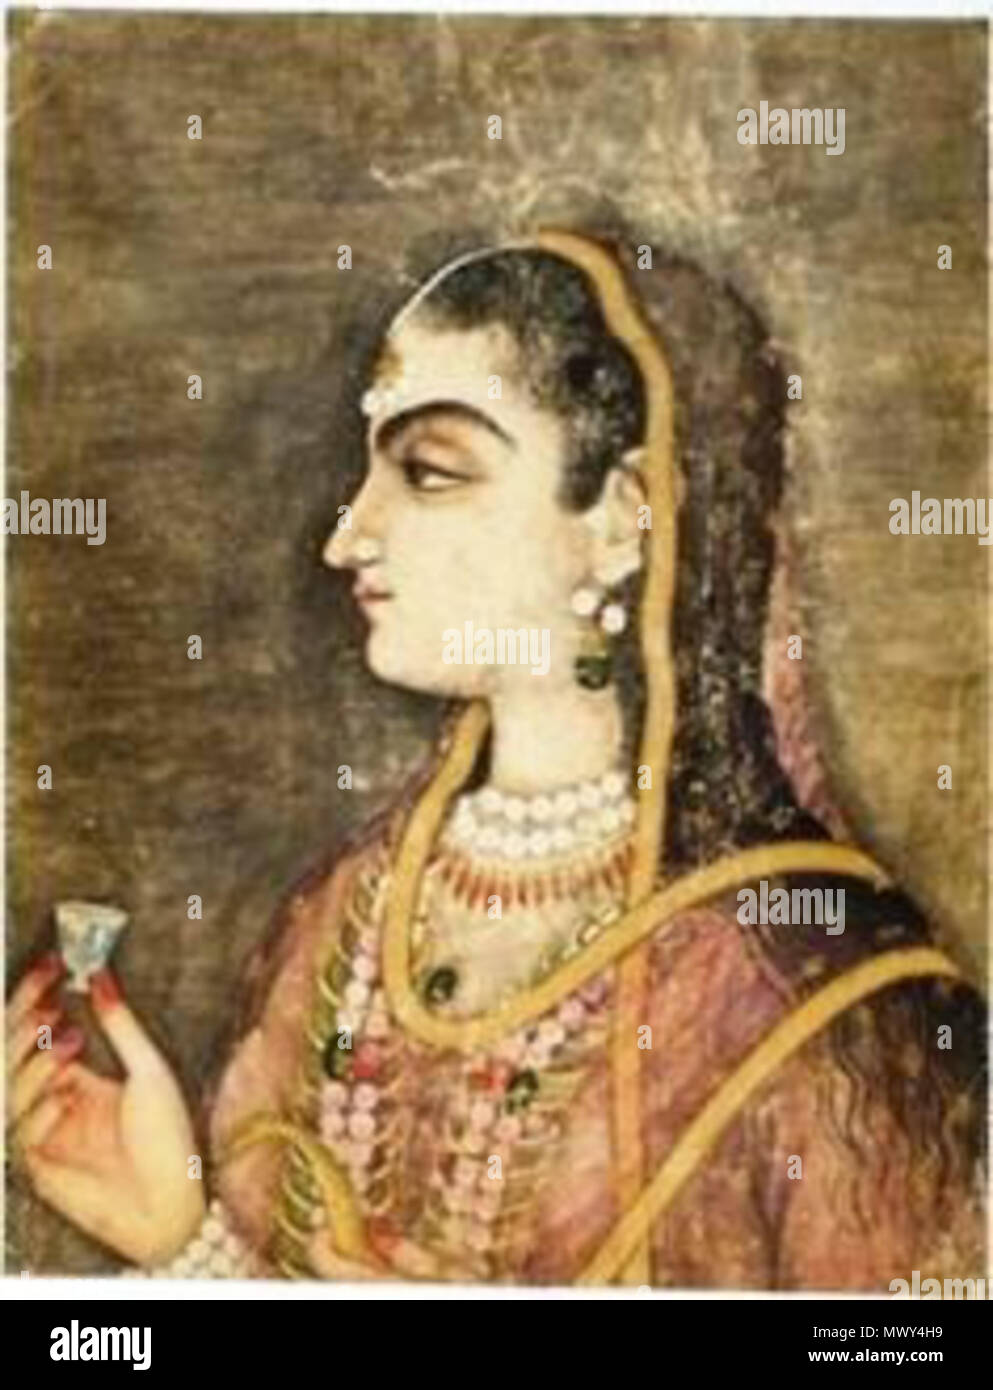 . Inglese: Jahanzeb 'Jani' Banu iniziata (d. 1705) era una principessa Mughal come la figlia del principe ereditario Dara Shikoh e la sua consorte Nadira Banu iniziata. Affettuosamente noto come Jani iniziata, anche lei era la nipote dell'imperatore Shah Jahan e Imperatrice Mumtaz Mahal. Lo scrittore italiano e viaggiatore, Niccolao Manucci, che hanno lavorato sotto il suo padre, descritto come il suo essere bello e coraggioso. In 1669, ha sposato il suo primo cugino, Principe Azam Shah, l'apparente erede imperatore Aurangzeb che brevemente divenne imperatore Mughal nel 1707. Il 30 aprile 2010, 16:37:01. Sconosciuto 306 Jahanzeb Banu iniziata Foto Stock